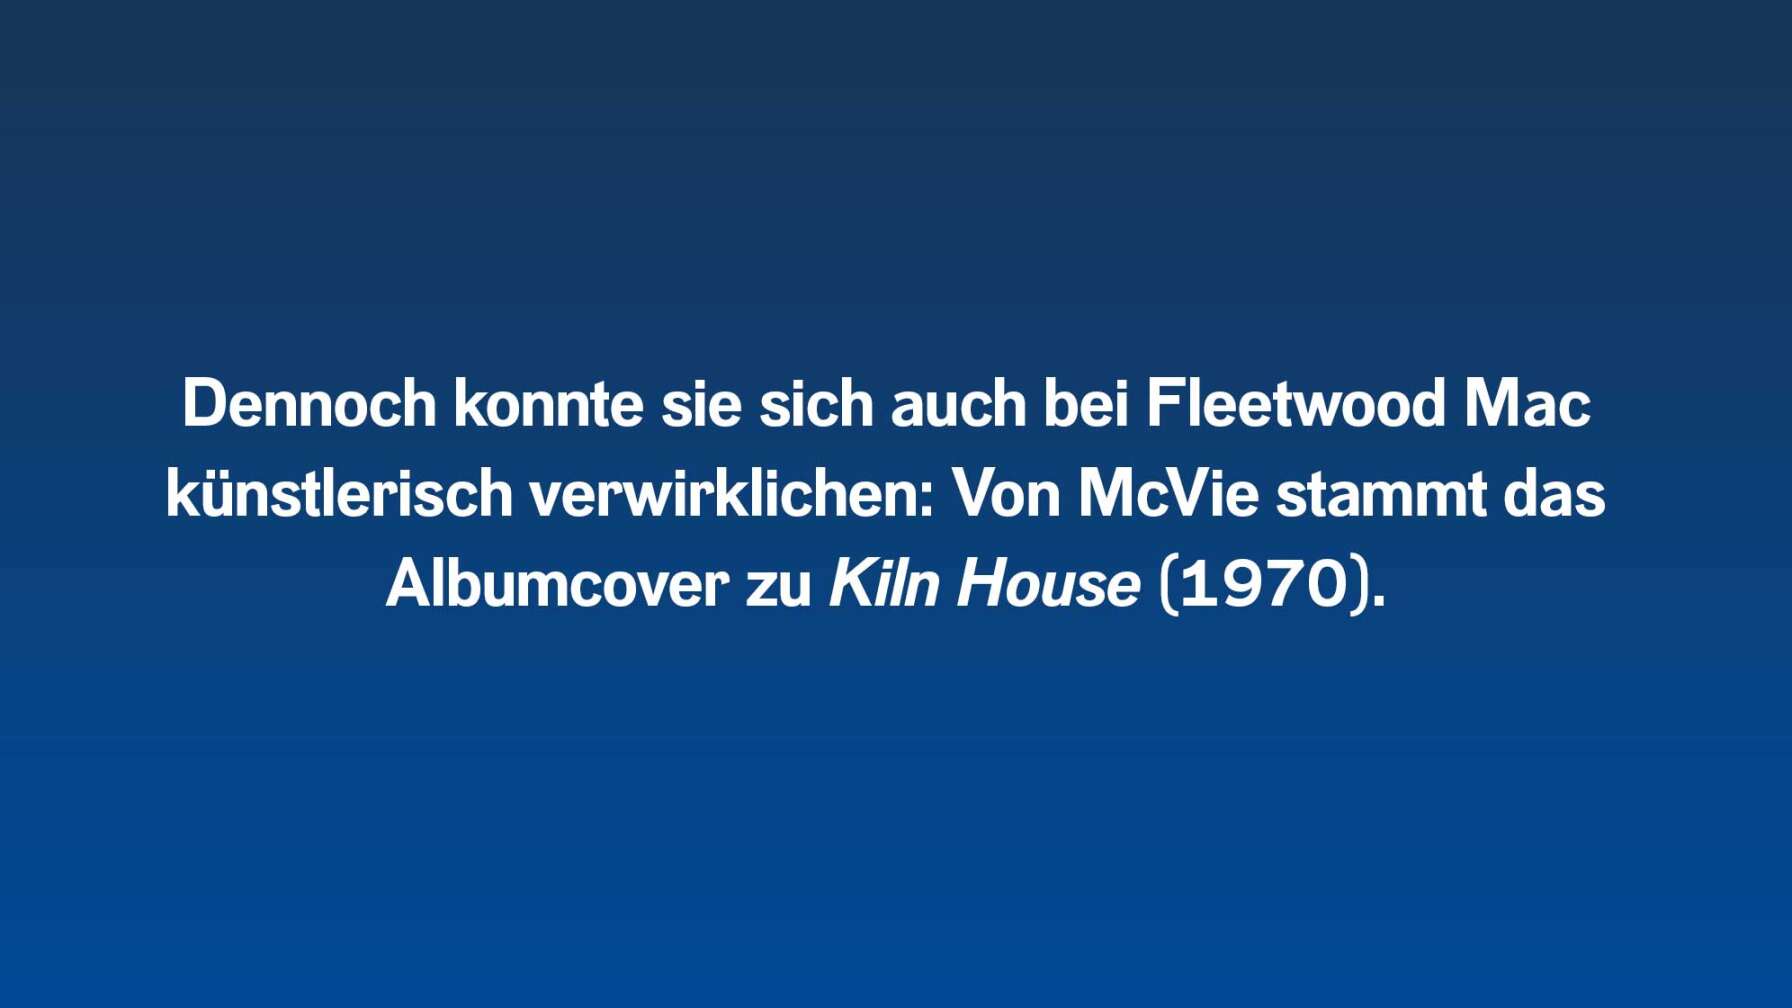 Dennoch konnte sie sich auch bei Fleetwood Mac künstlerisch verwirklichen: Von McVie stammt das Albumcover zu Kiln House (1970).